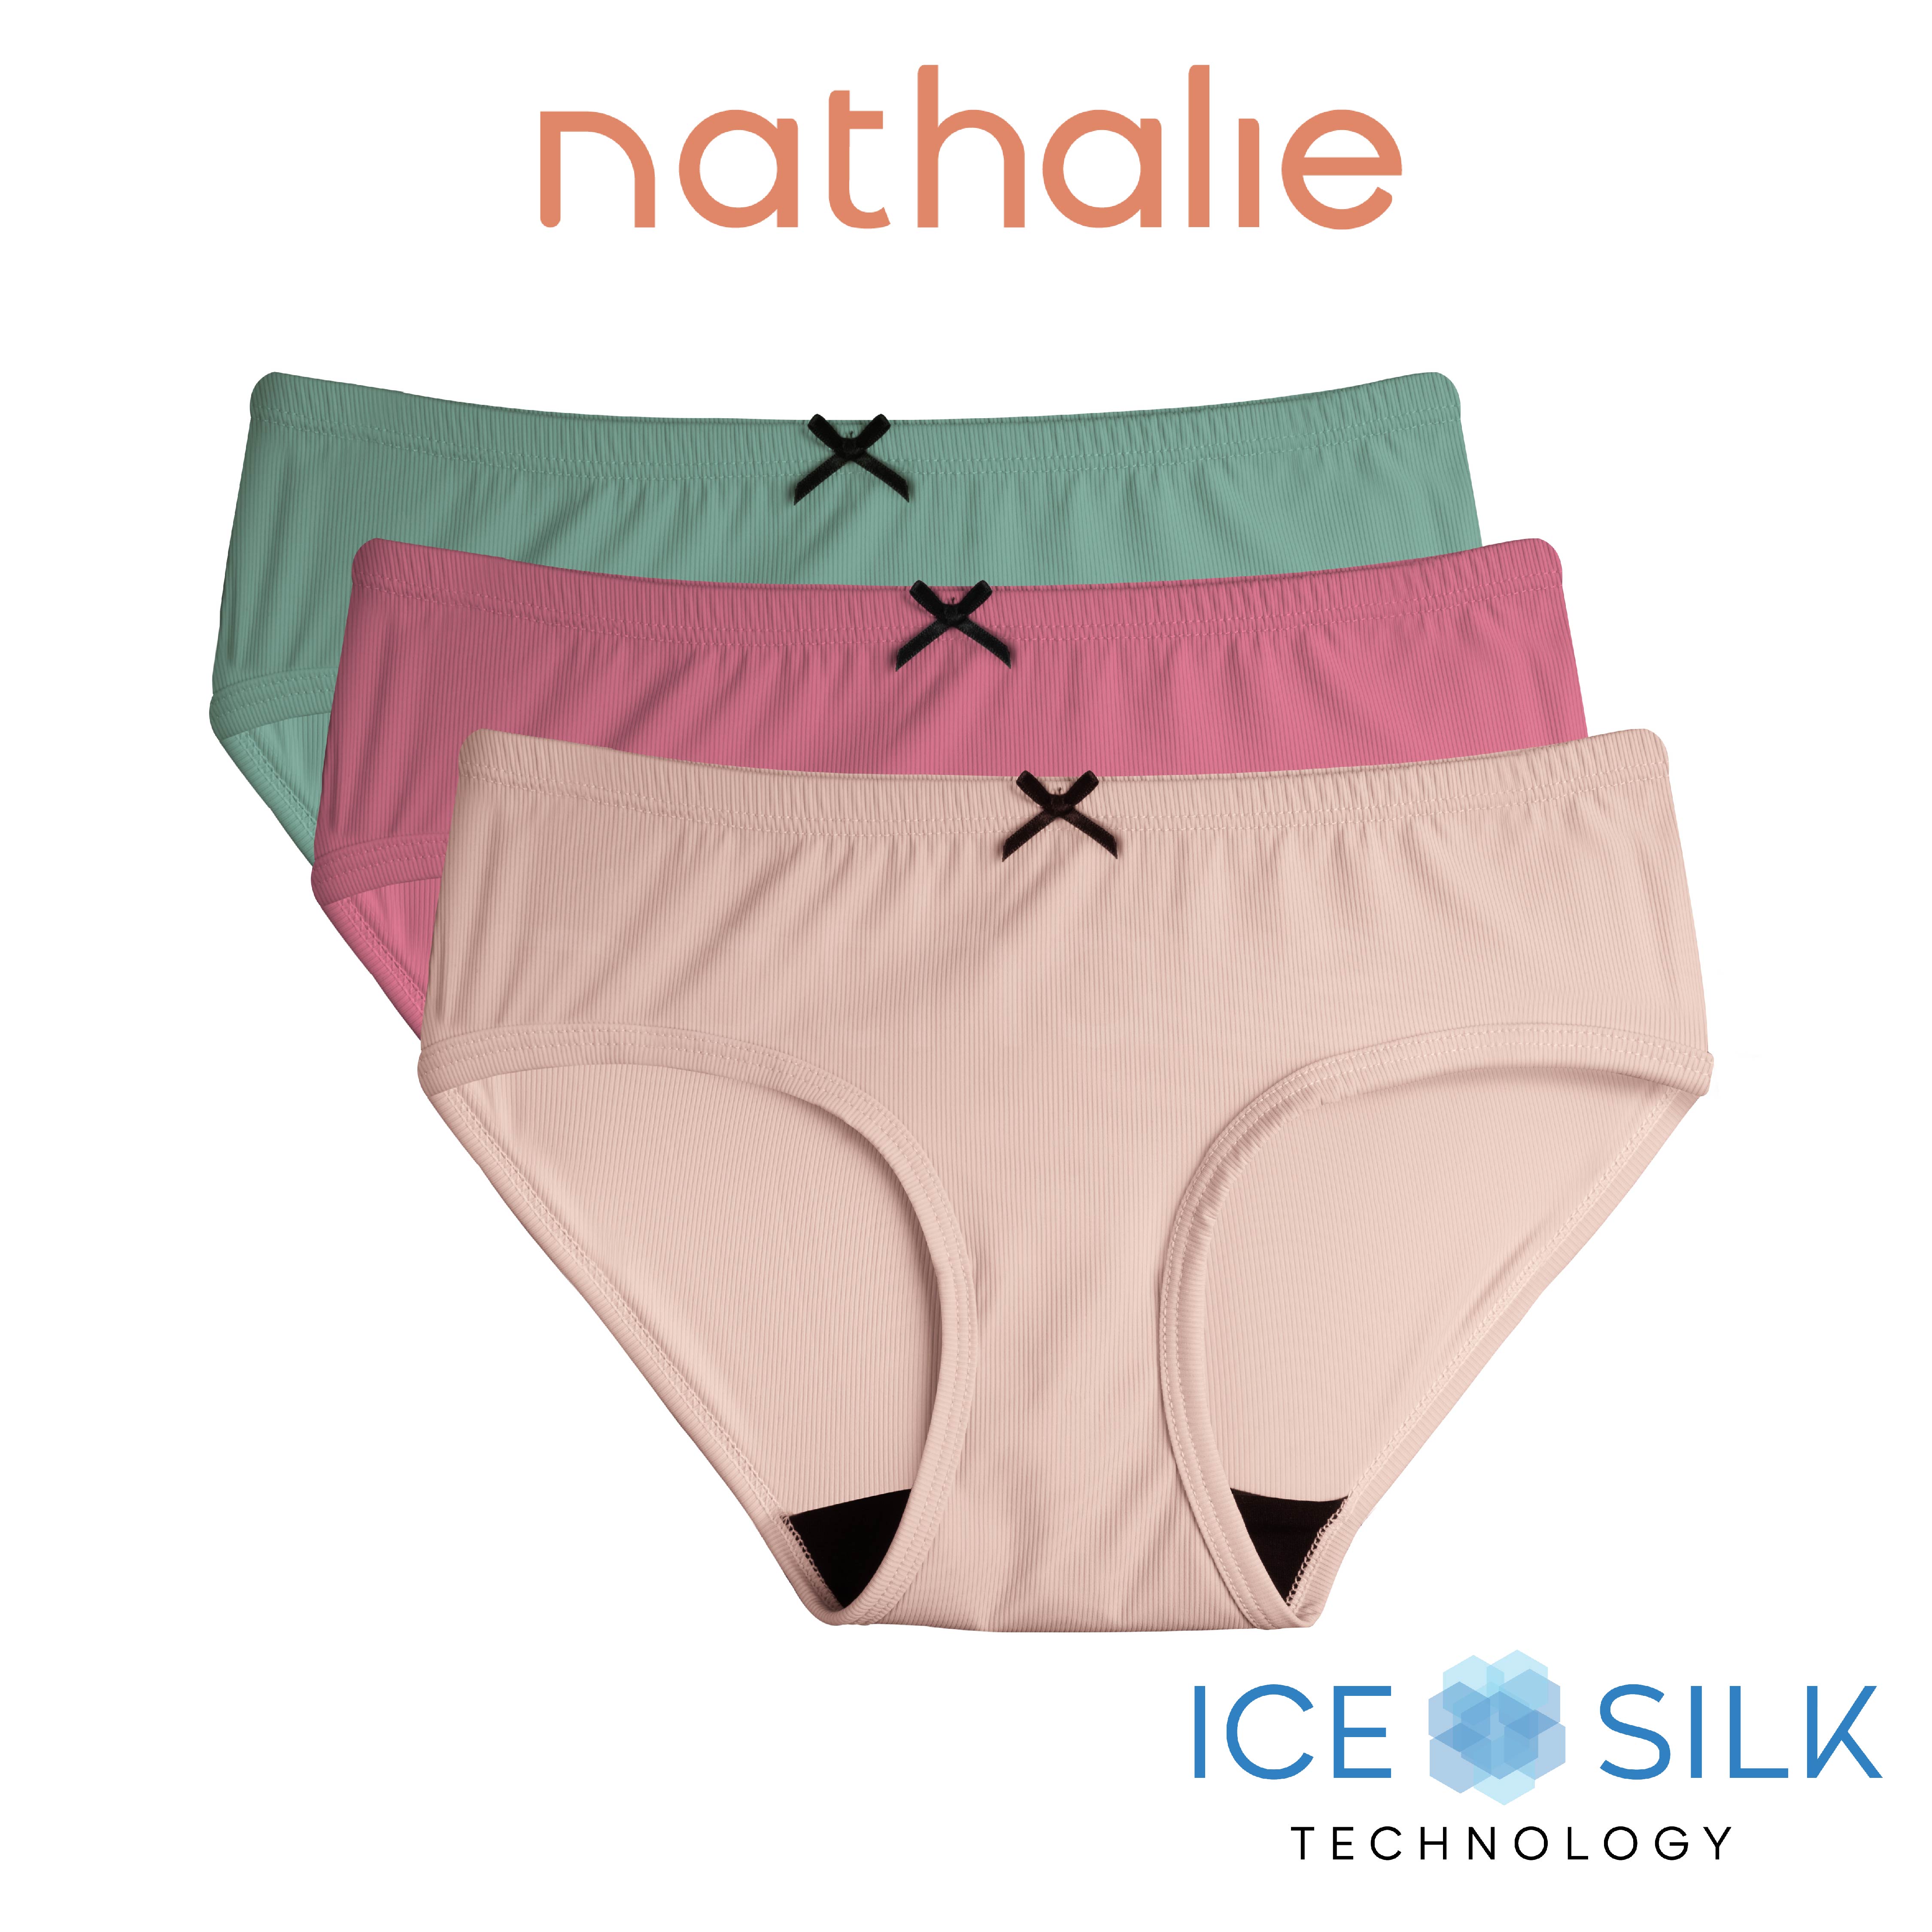 Nathalie Celana Dalam Wanita Ice Silk Rib CD Cewek NTC 3466 1 Pcs